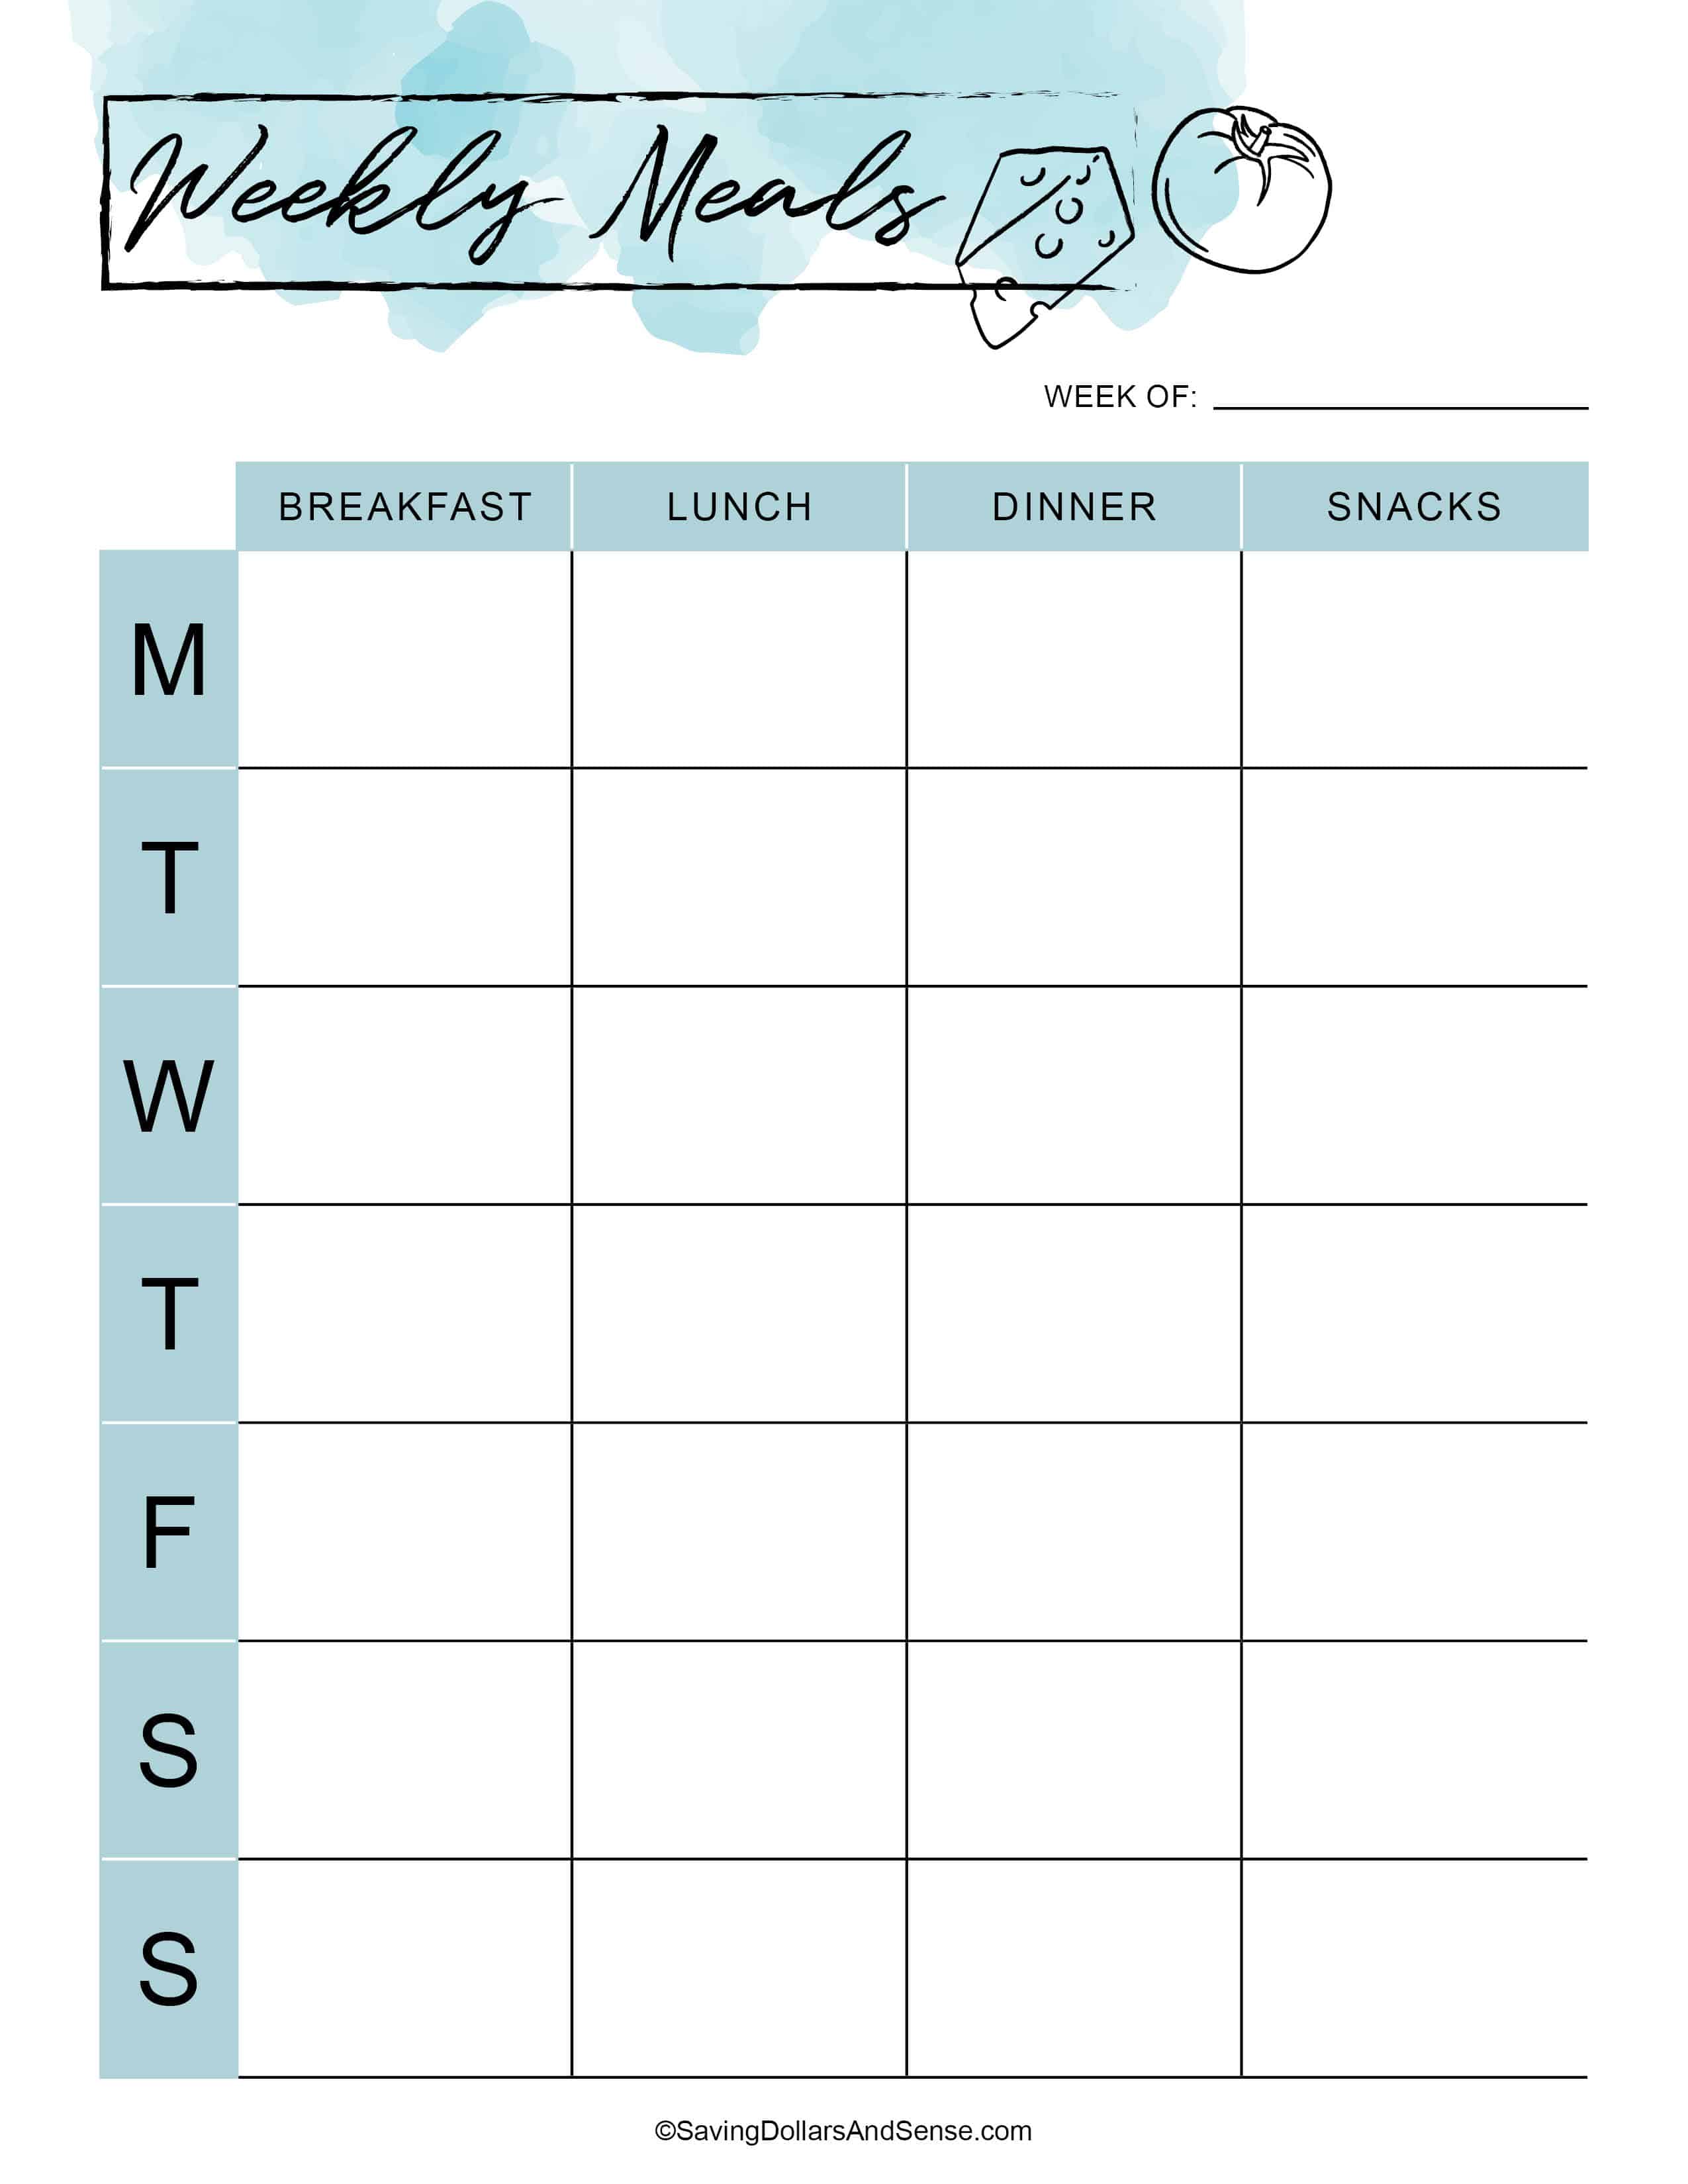 free printable weekly meal planner calendar editable weekly meal